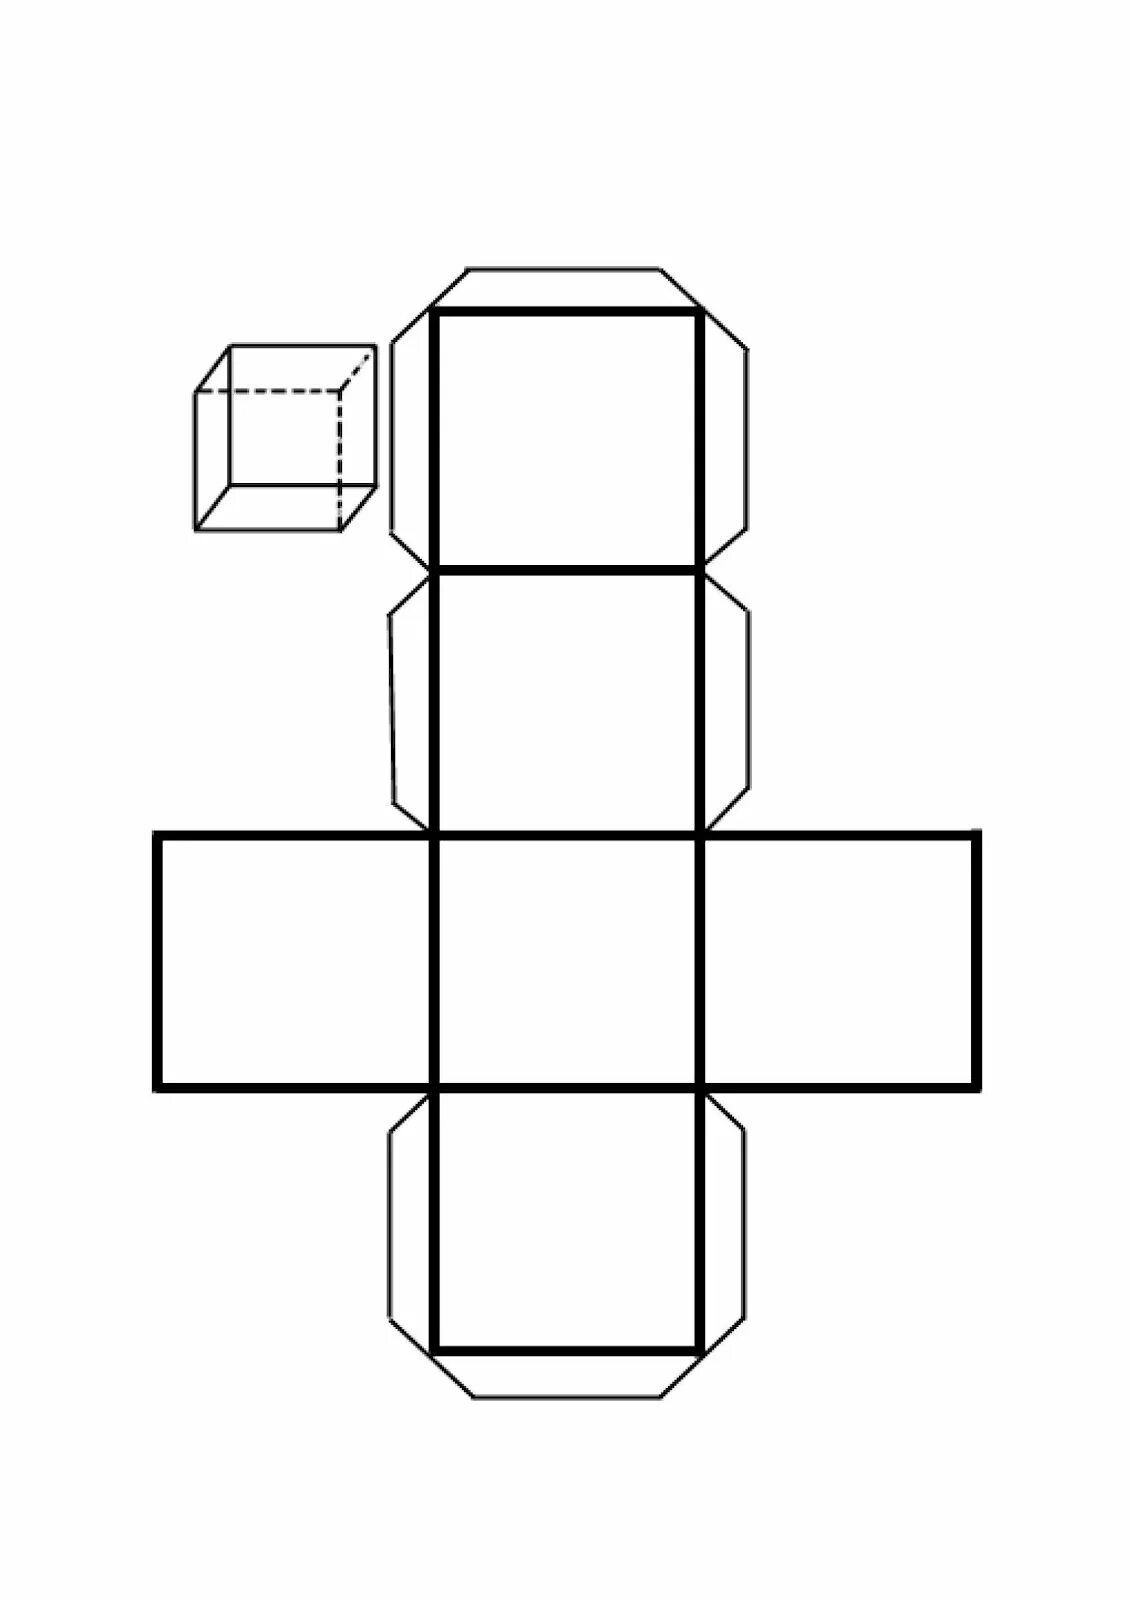 Шаблон куба для склеивания. Развертка кубика. Развёртки геометрических фигур. Объемная фигура куб. Развертка геометрических фигур куб.